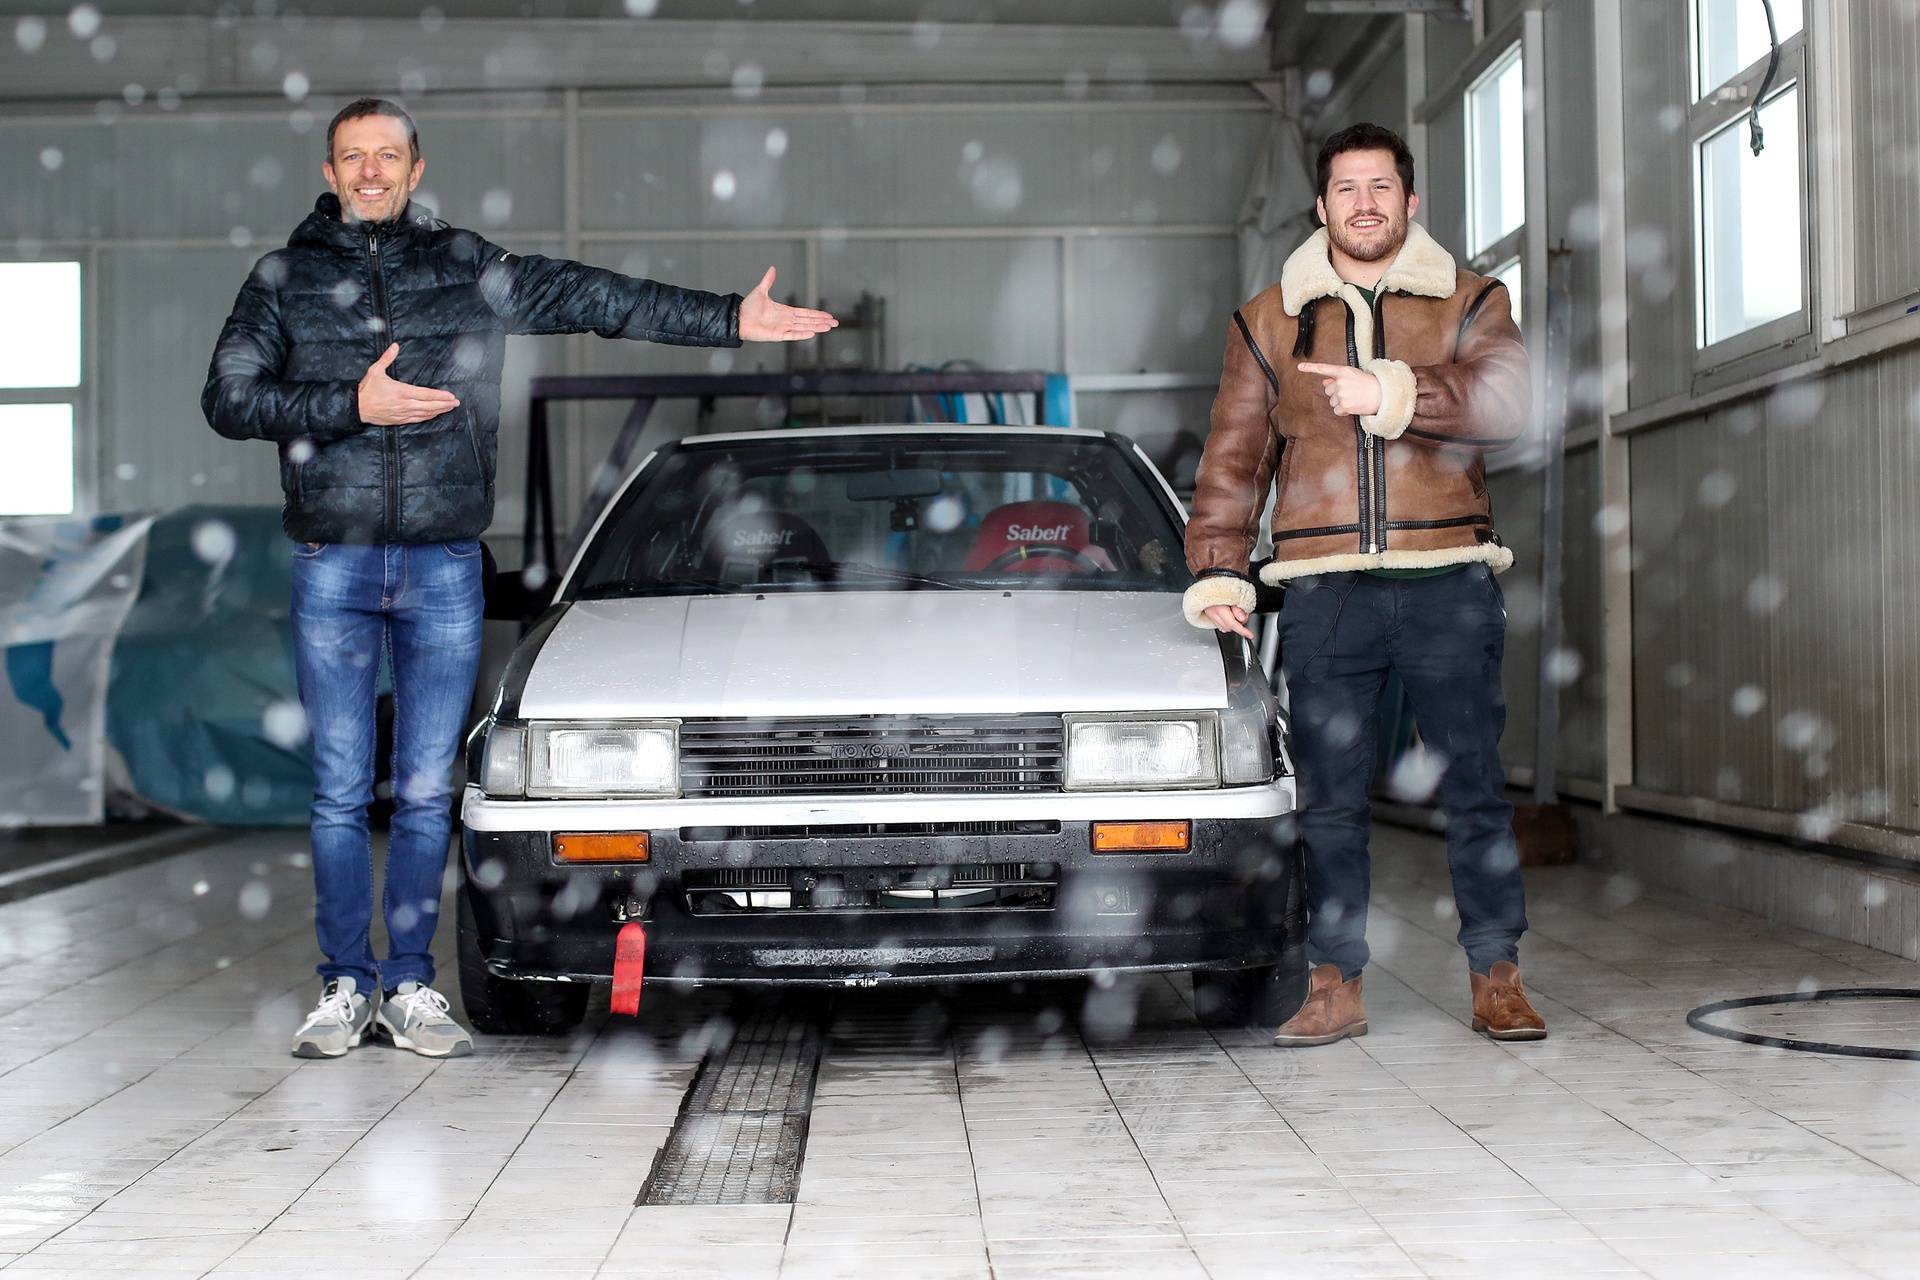 Croata i Šebalj 'zaplesali' tango na snijegu: Riknuo nam je auto